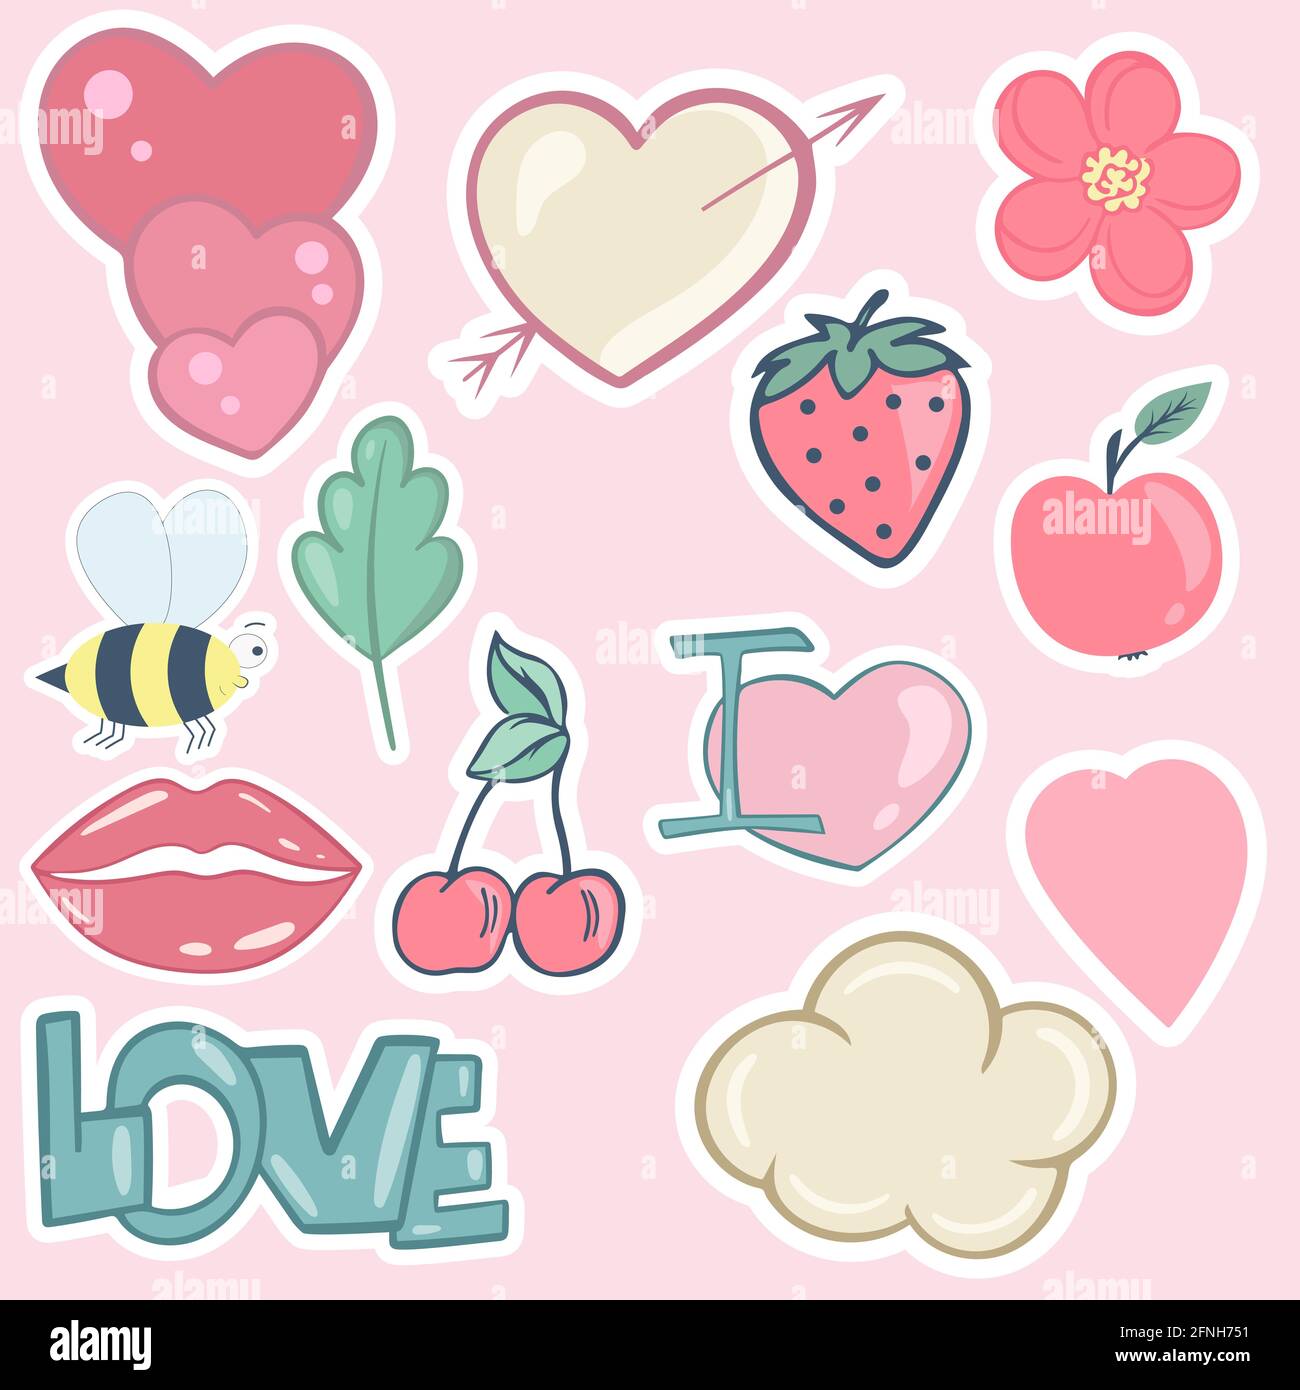 Aufkleberset. Vektor. Isolierte Illustration einer Blumenwolke, die Erdbeere und Kirsche küsst. Verschiedene Streifen in Pastellfarben. Handzeichnung. Stock Vektor